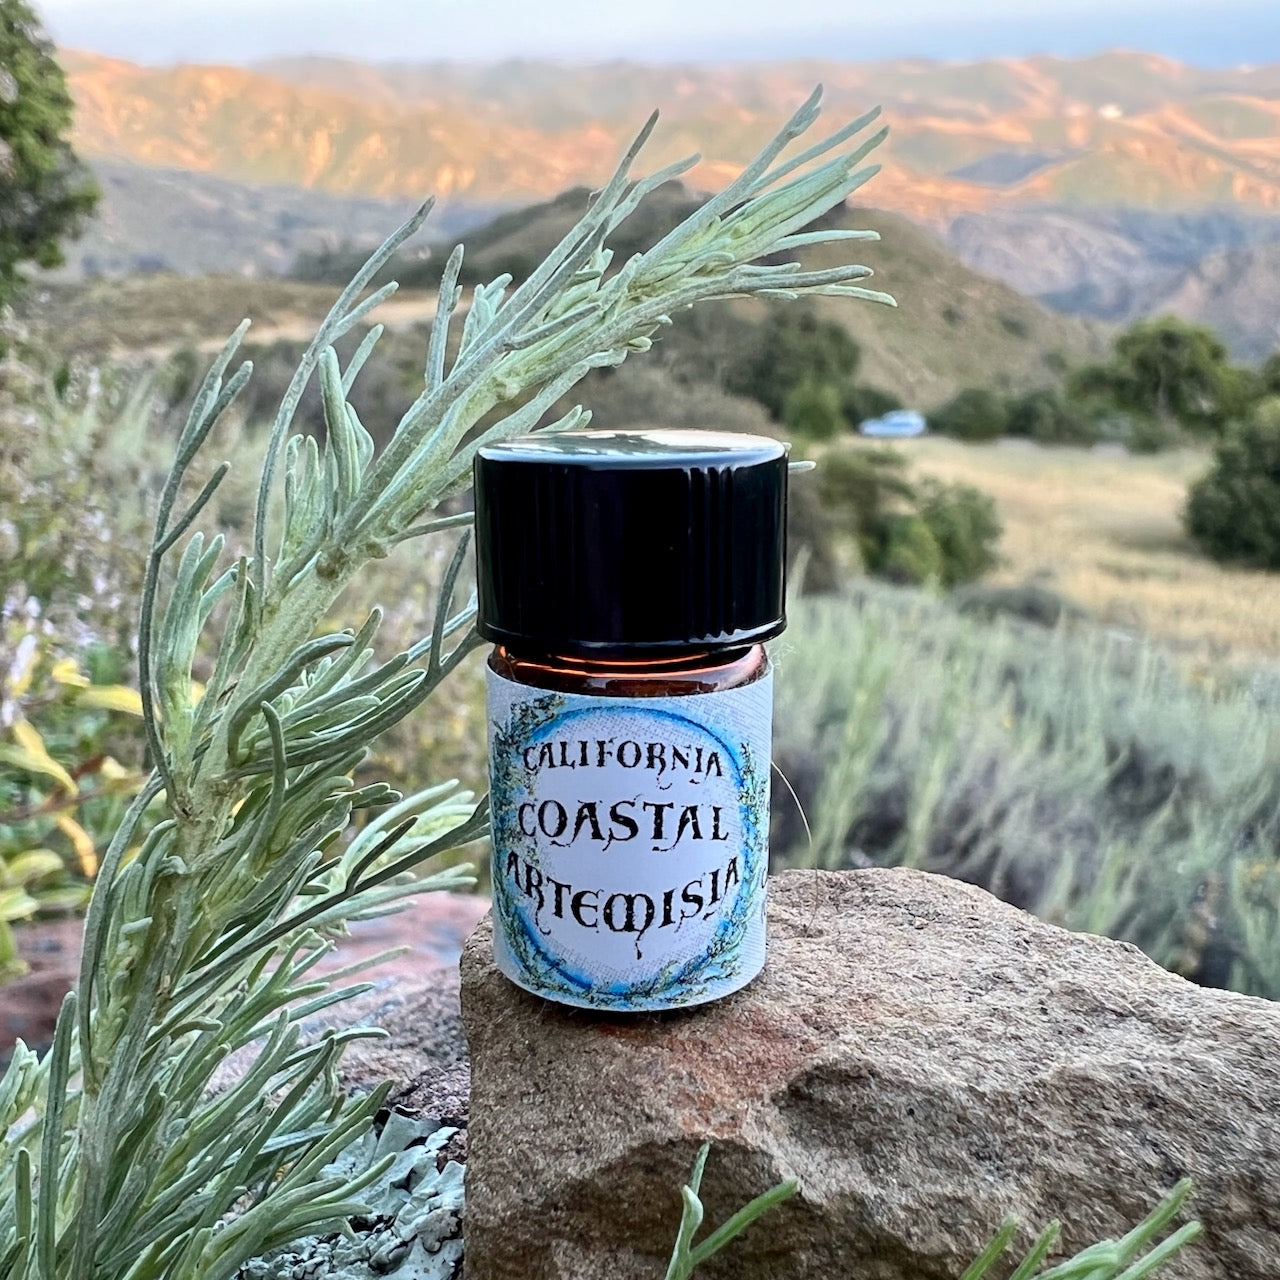 California Coastal Artemisia Sagebrush Essential Oil (Artemisia californica) Wildcrafted